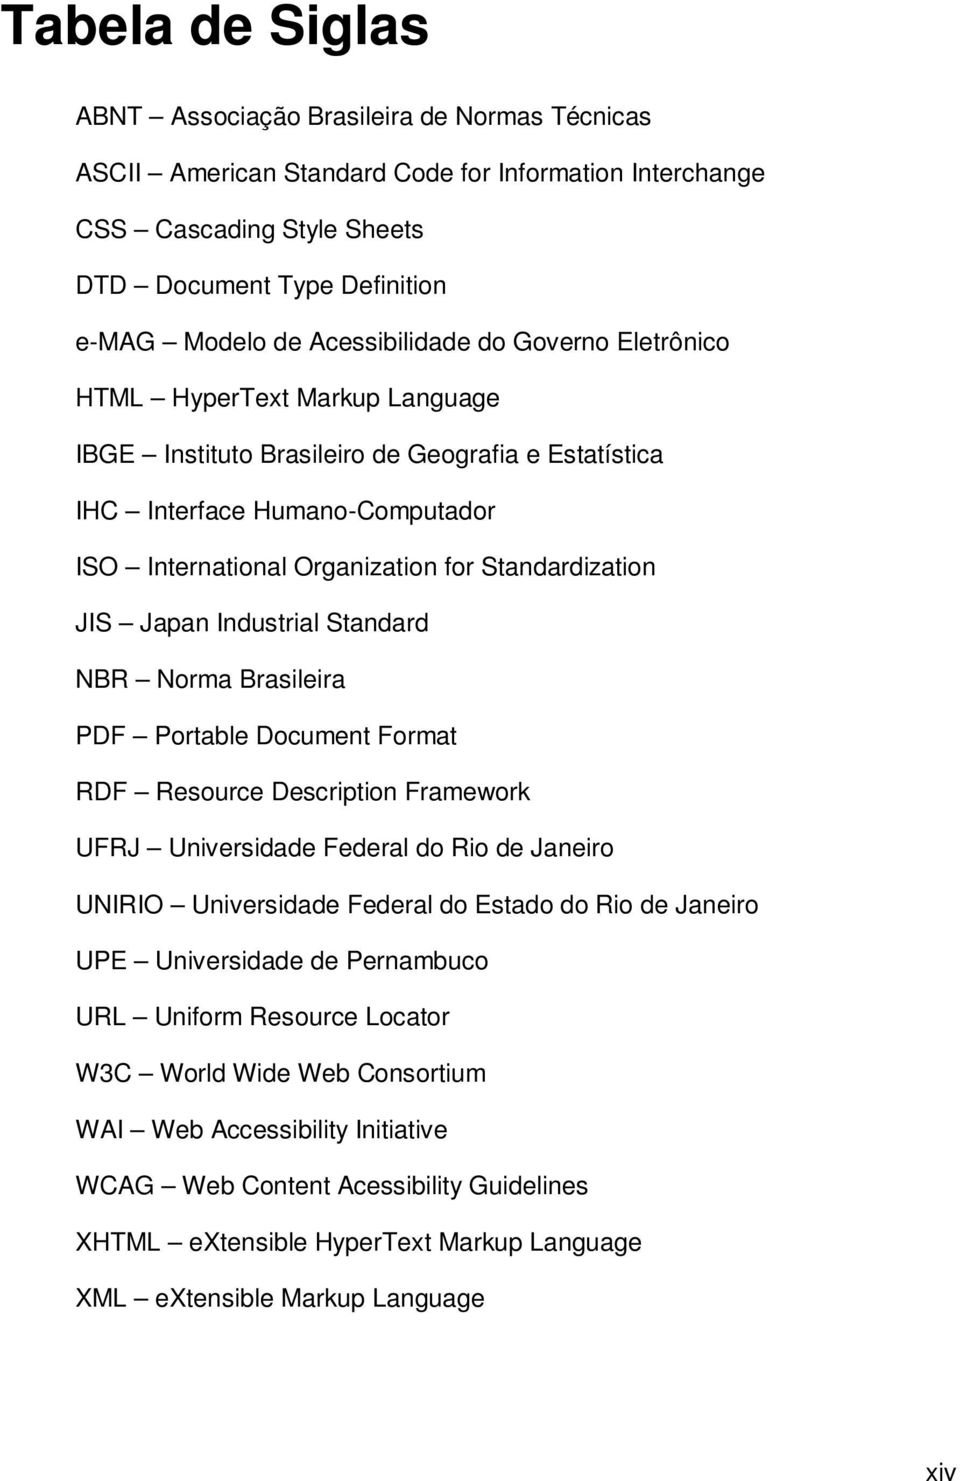 Standardization JIS Japan Industrial Standard NBR Norma Brasileira PDF Portable Document Format RDF Resource Description Framework UFRJ Universidade Federal do Rio de Janeiro UNIRIO Universidade